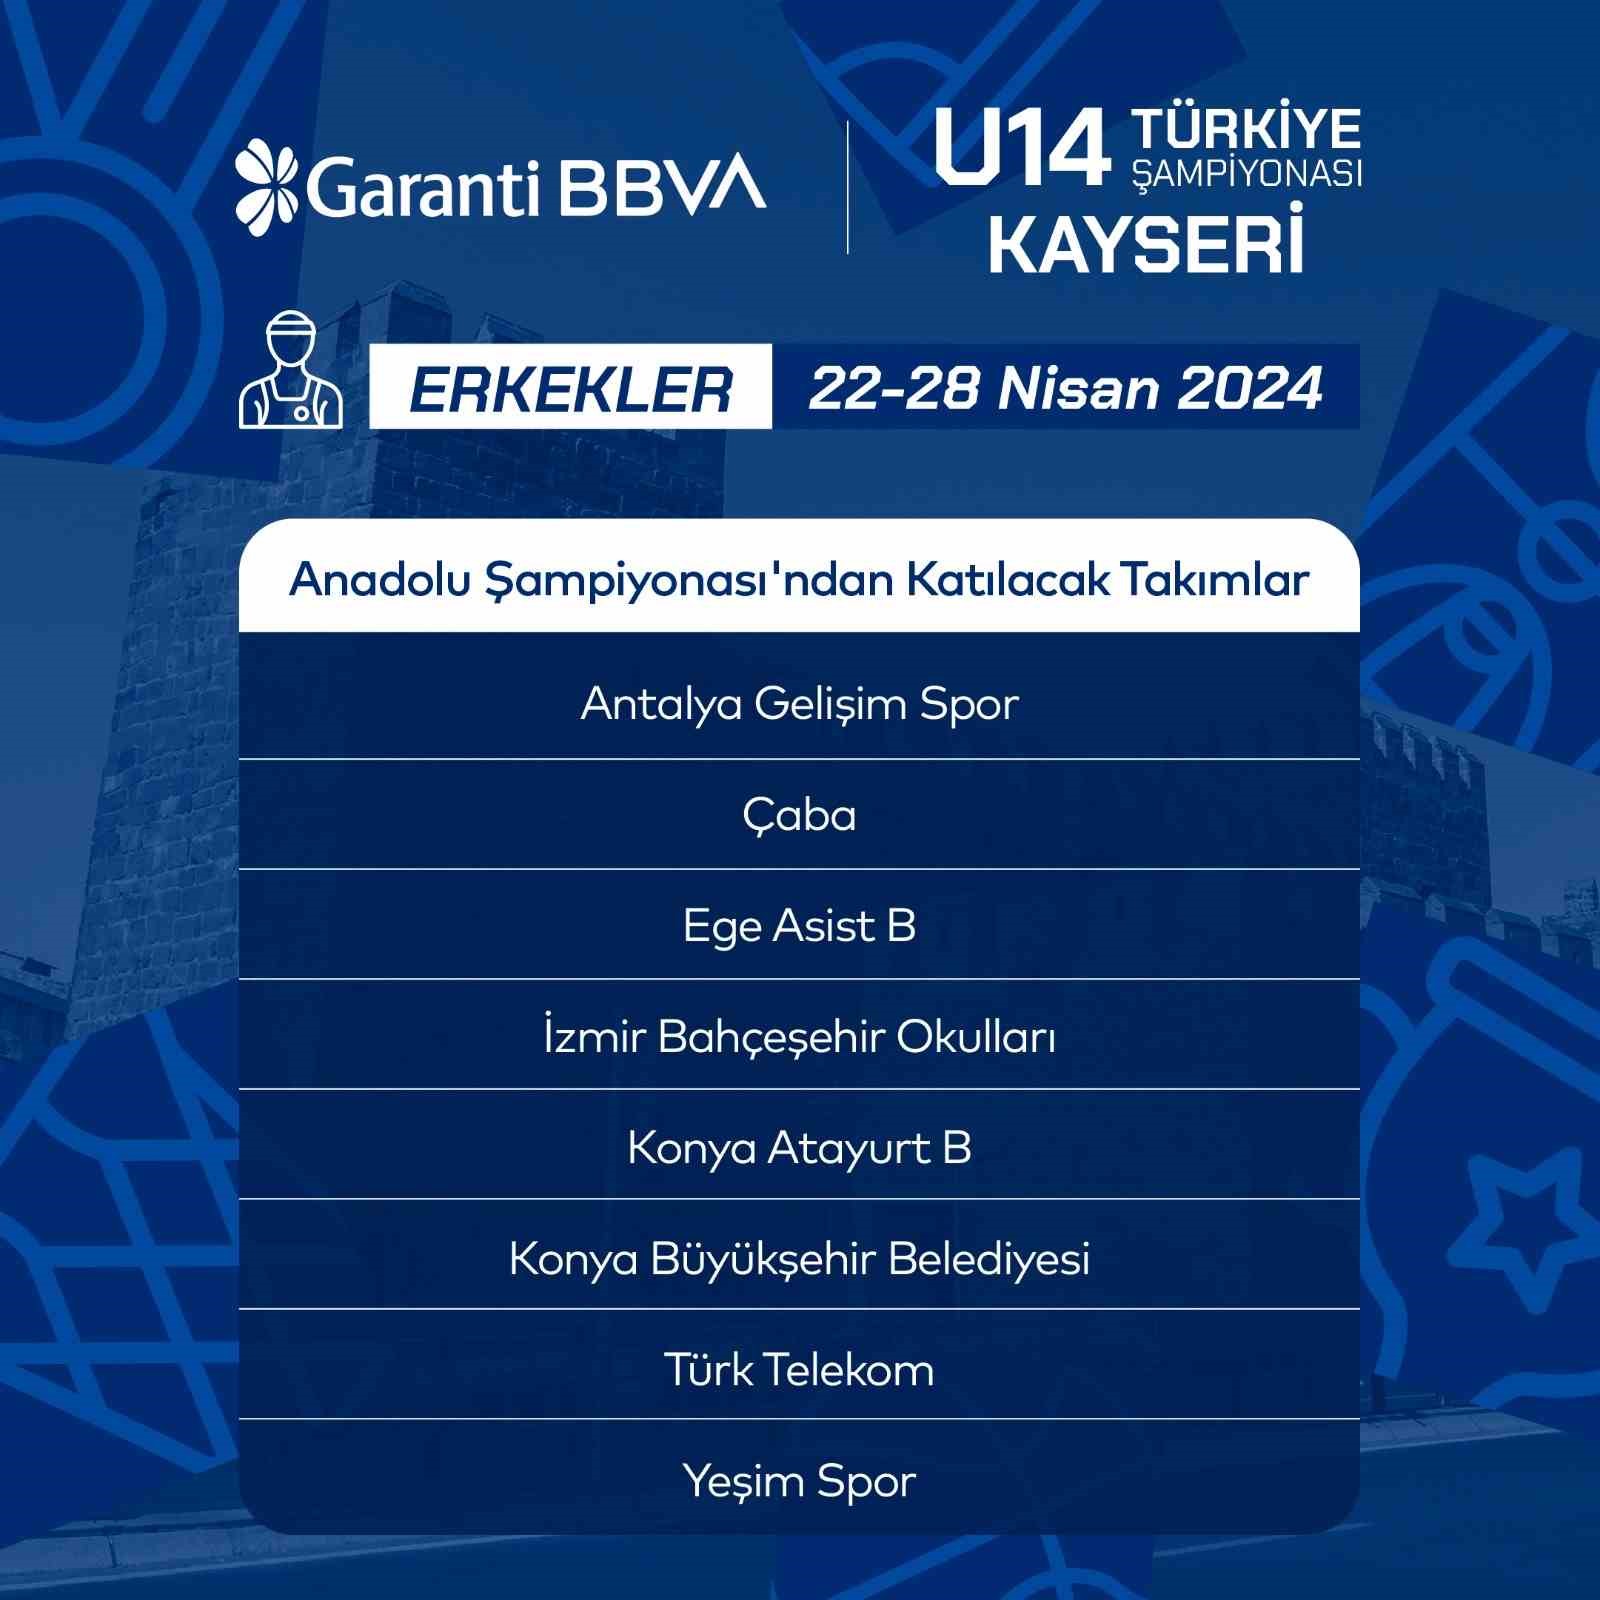 Basketbol Erkekler U14 Türkiye Şampiyonasına katılacak takımlar belli oldu
